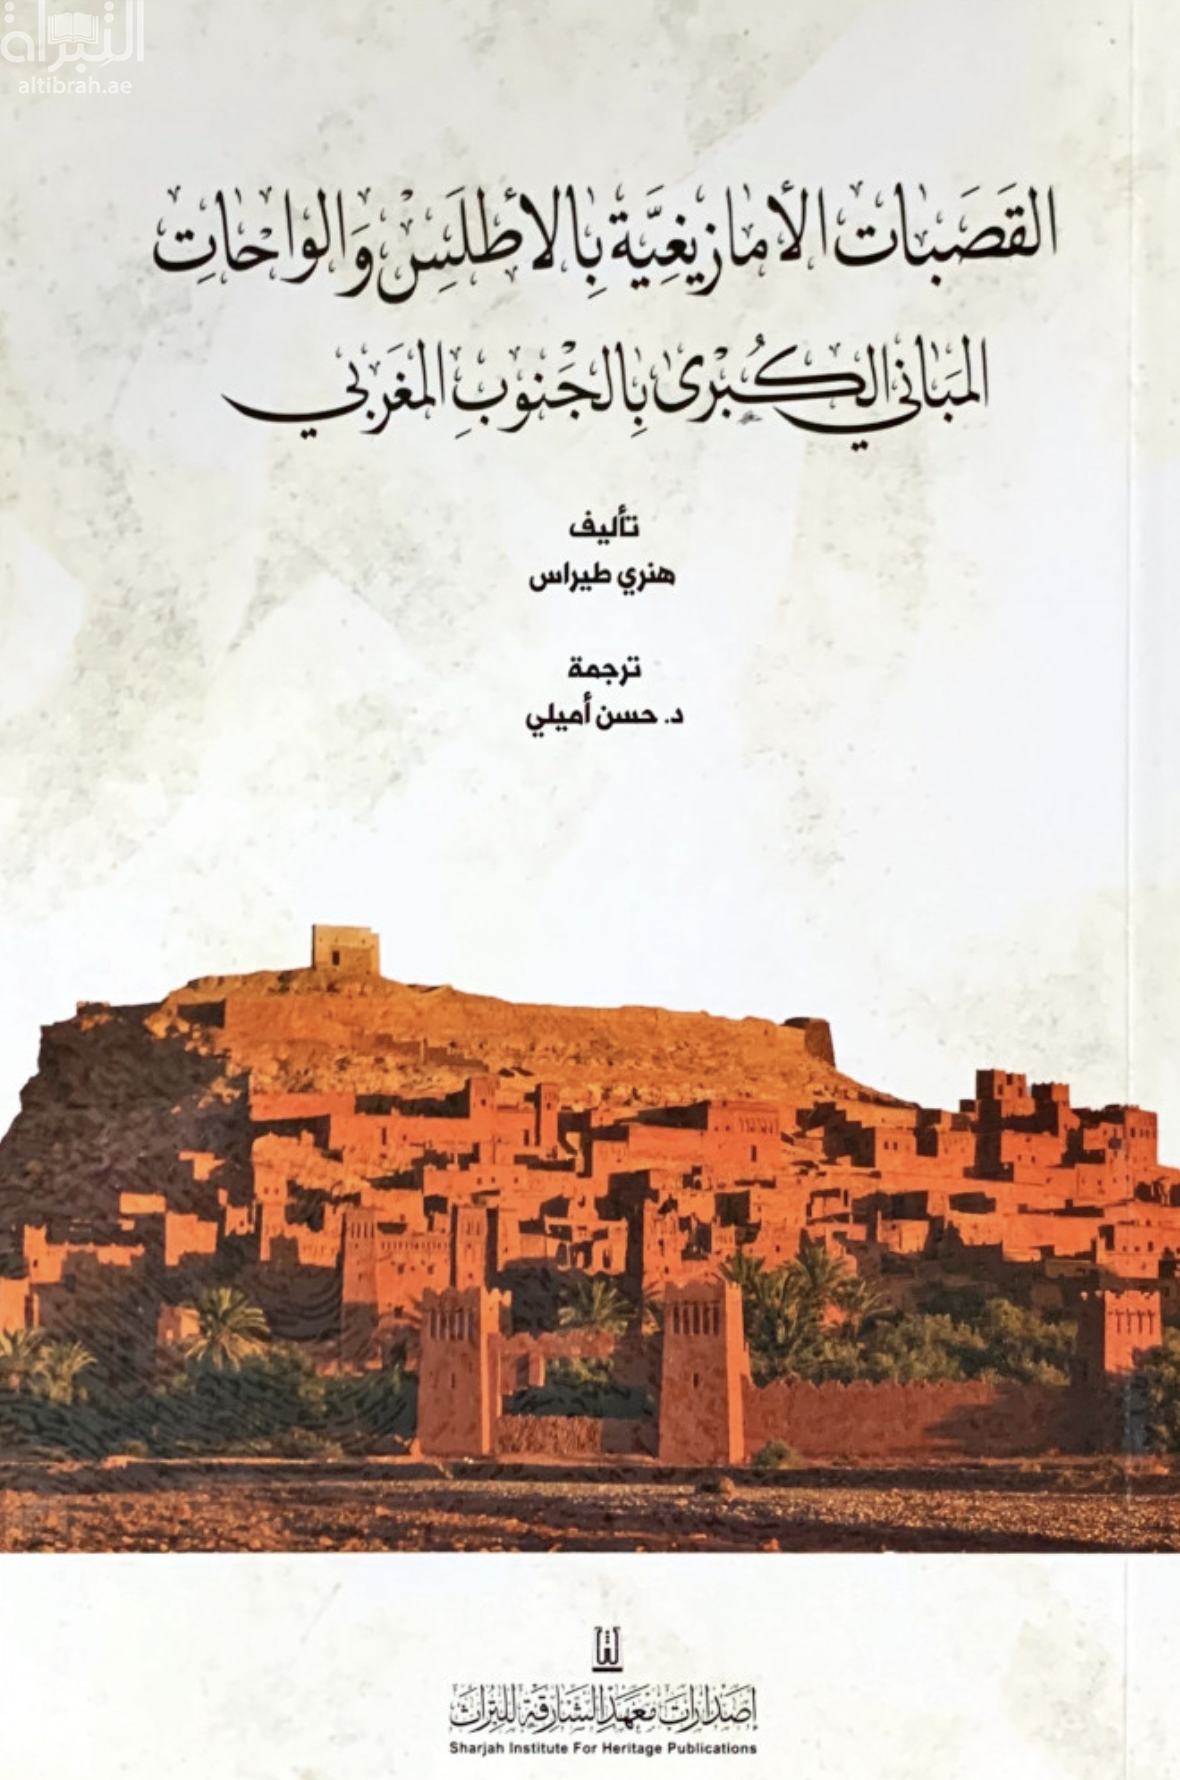 القصبات الأمازيغية بالأطلس والواحات المباني الكبرى في الجنوب المغربي